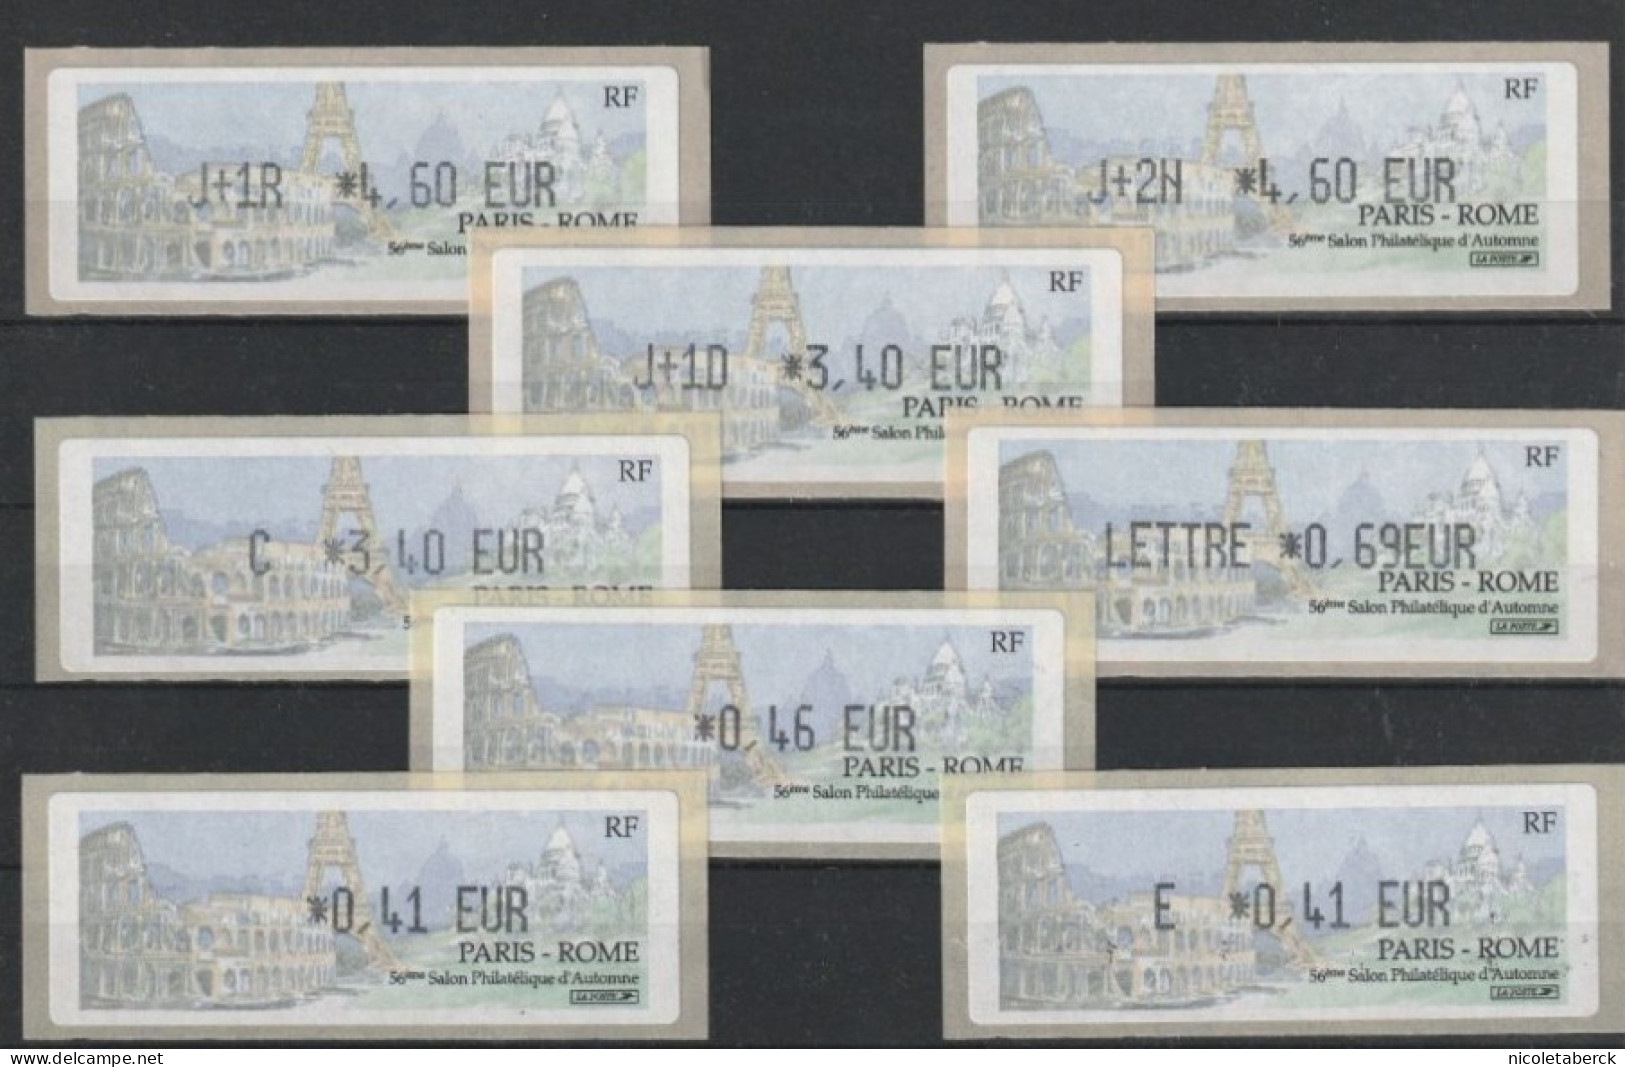 Vignette LSA  N°518 à 524, Paris Rome, Tour Eiffel, Sacré Cœur, Colisée. Cote 76€. - 1981-84 Types « LS » & « LSA » (prototypes)